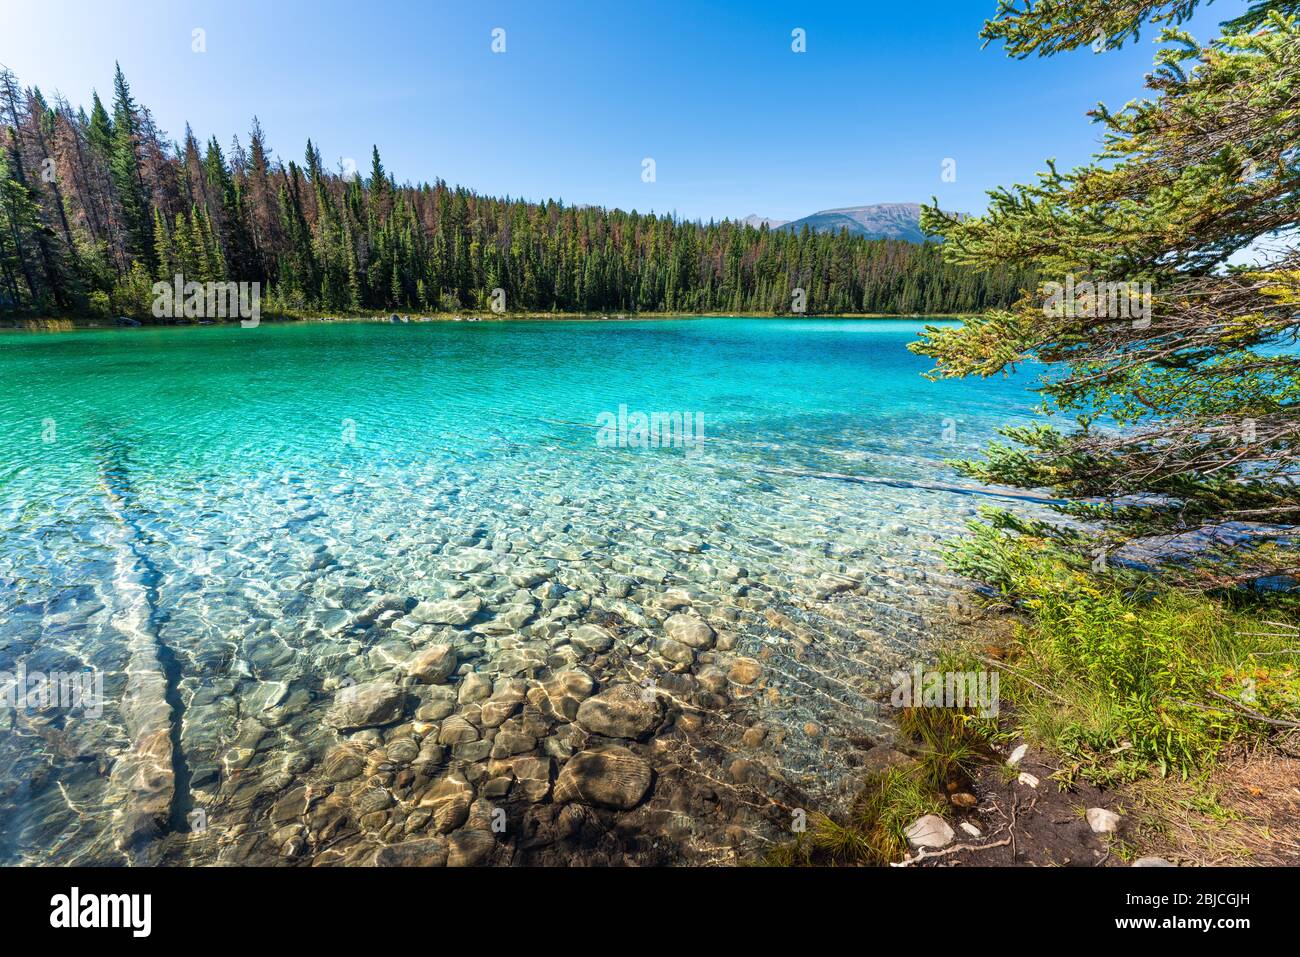 Deuxième lac de la vallée des cinq lacs, Jasper, Rocheuses canadiennes, Canada. Banque D'Images